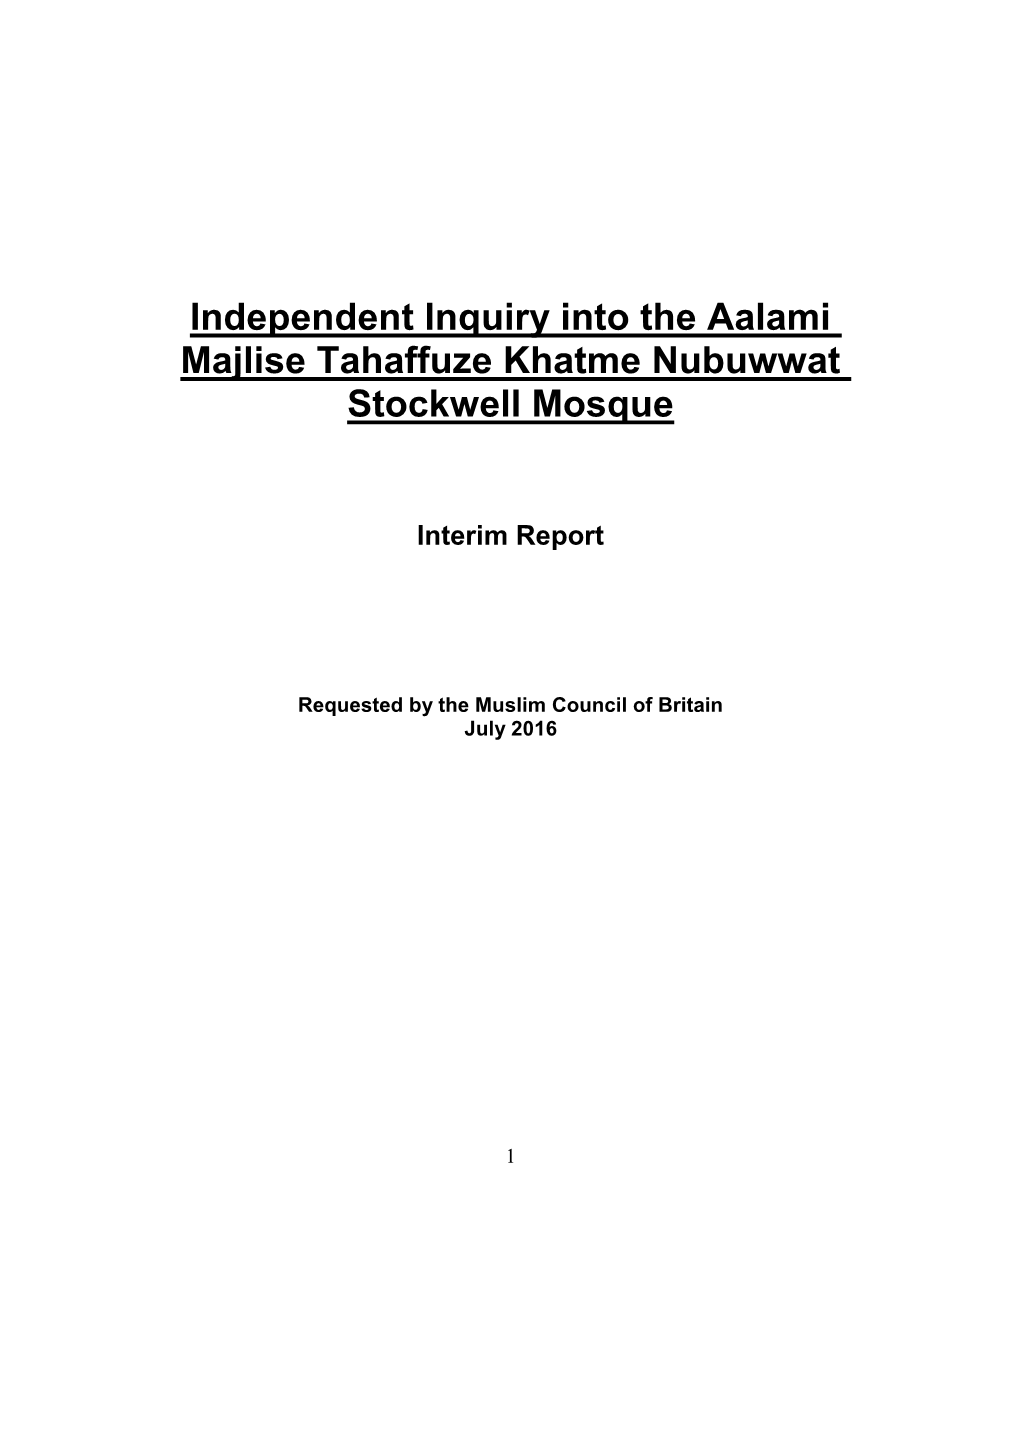 Independent Inquiry Into the Aalami Majlise Tahaffuze Khatme Nubuwwat Stockwell Mosque